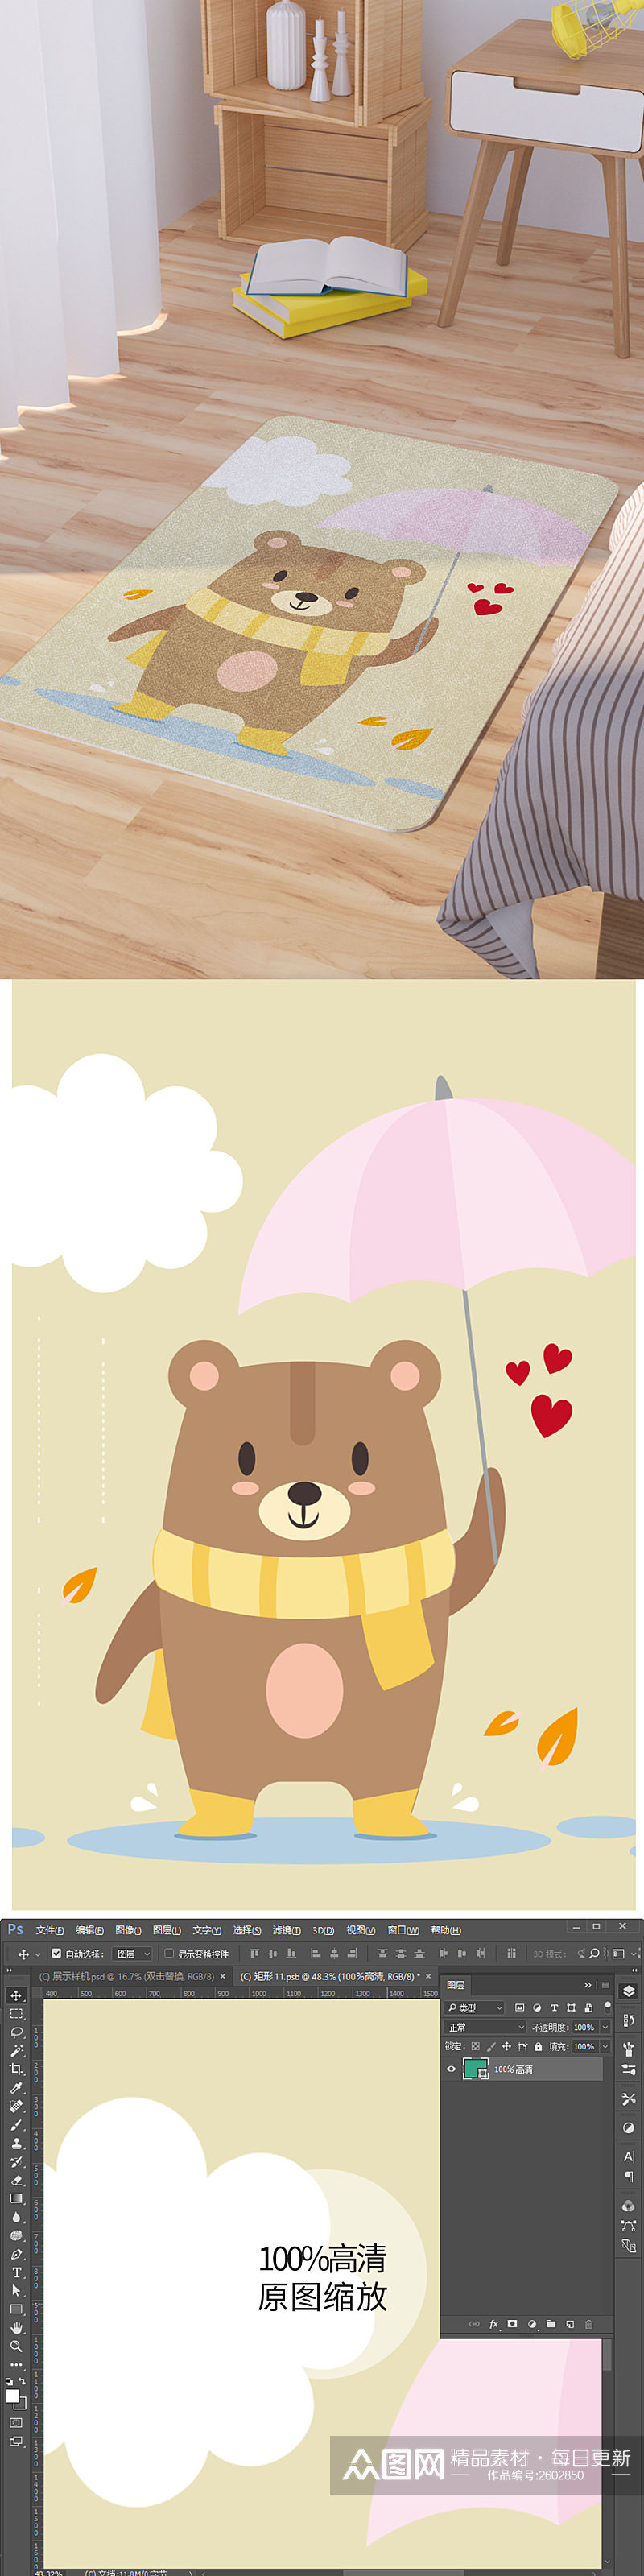 矢量手绘卡通可爱打伞小熊脚垫地毯图案素材